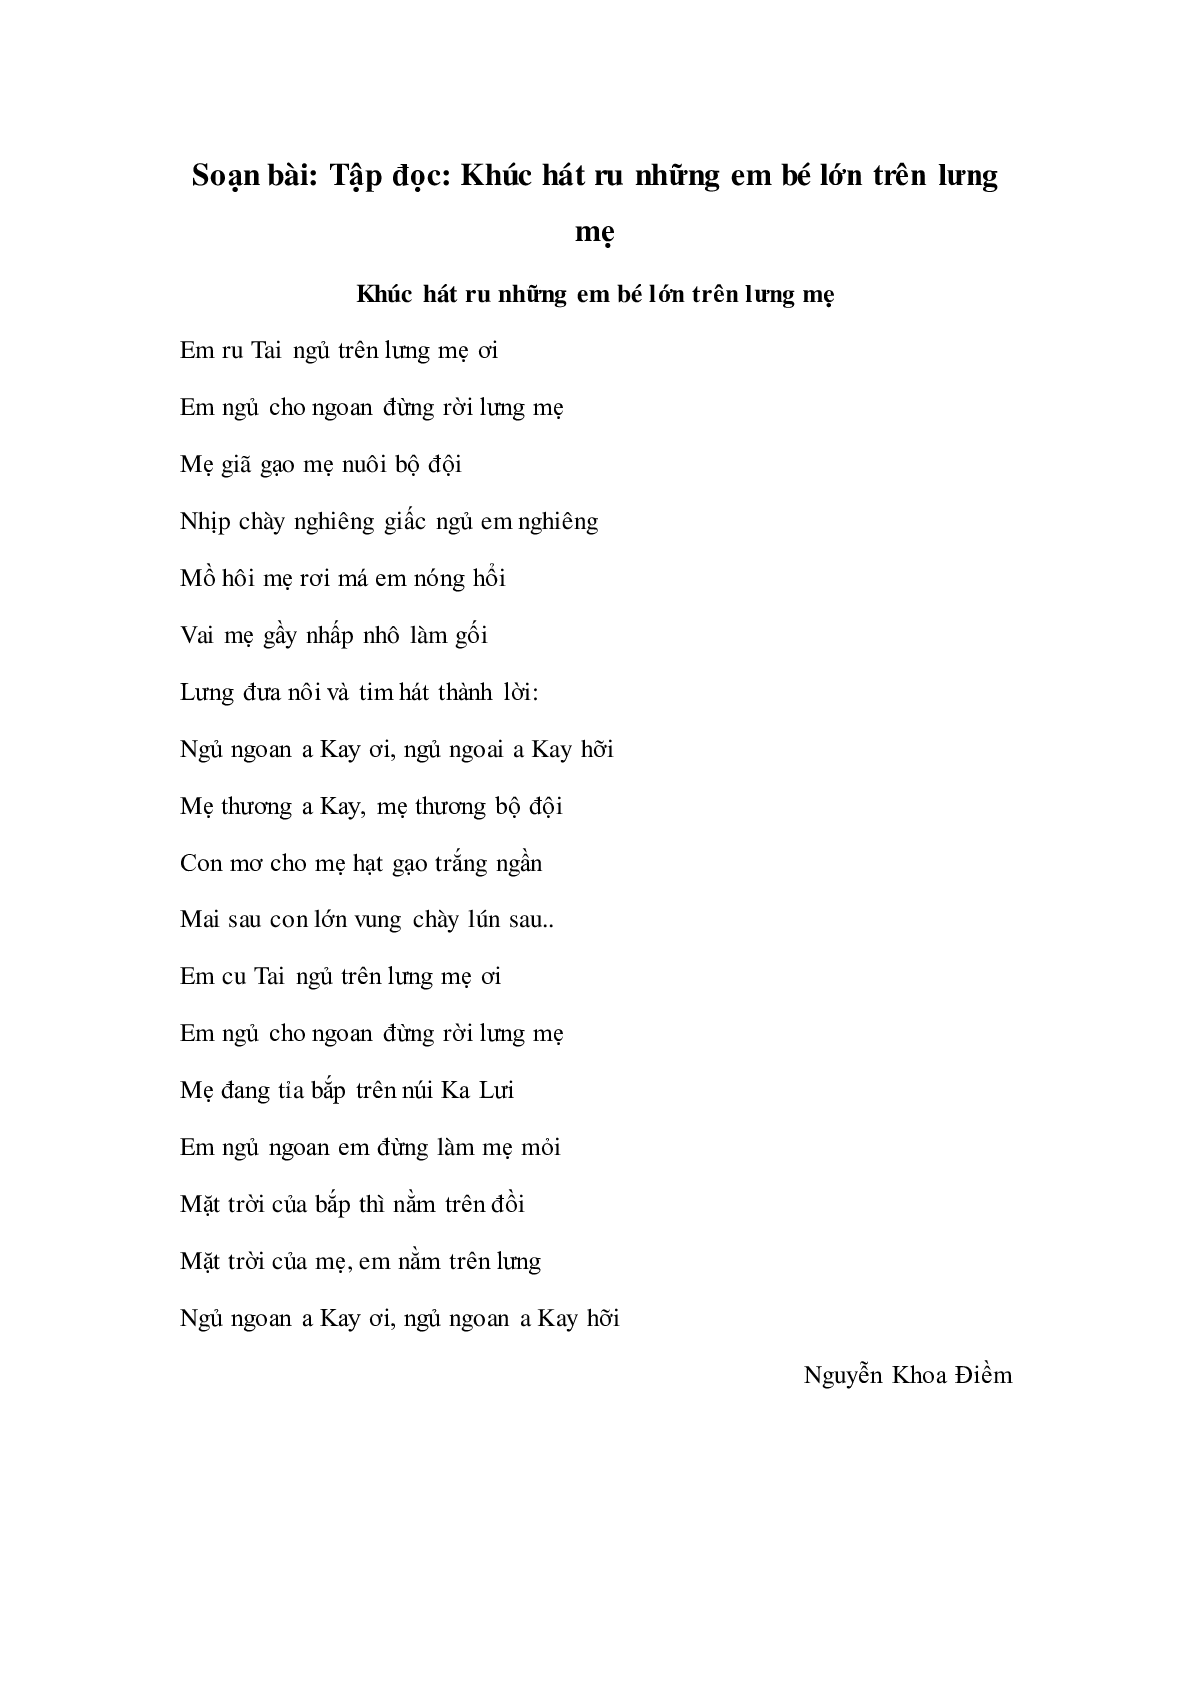 Soạn Tiếng Việt lớp 4: Tập đọc: Khúc hát ru những em bé lớn trên lưng mẹ mới nhất (trang 1)